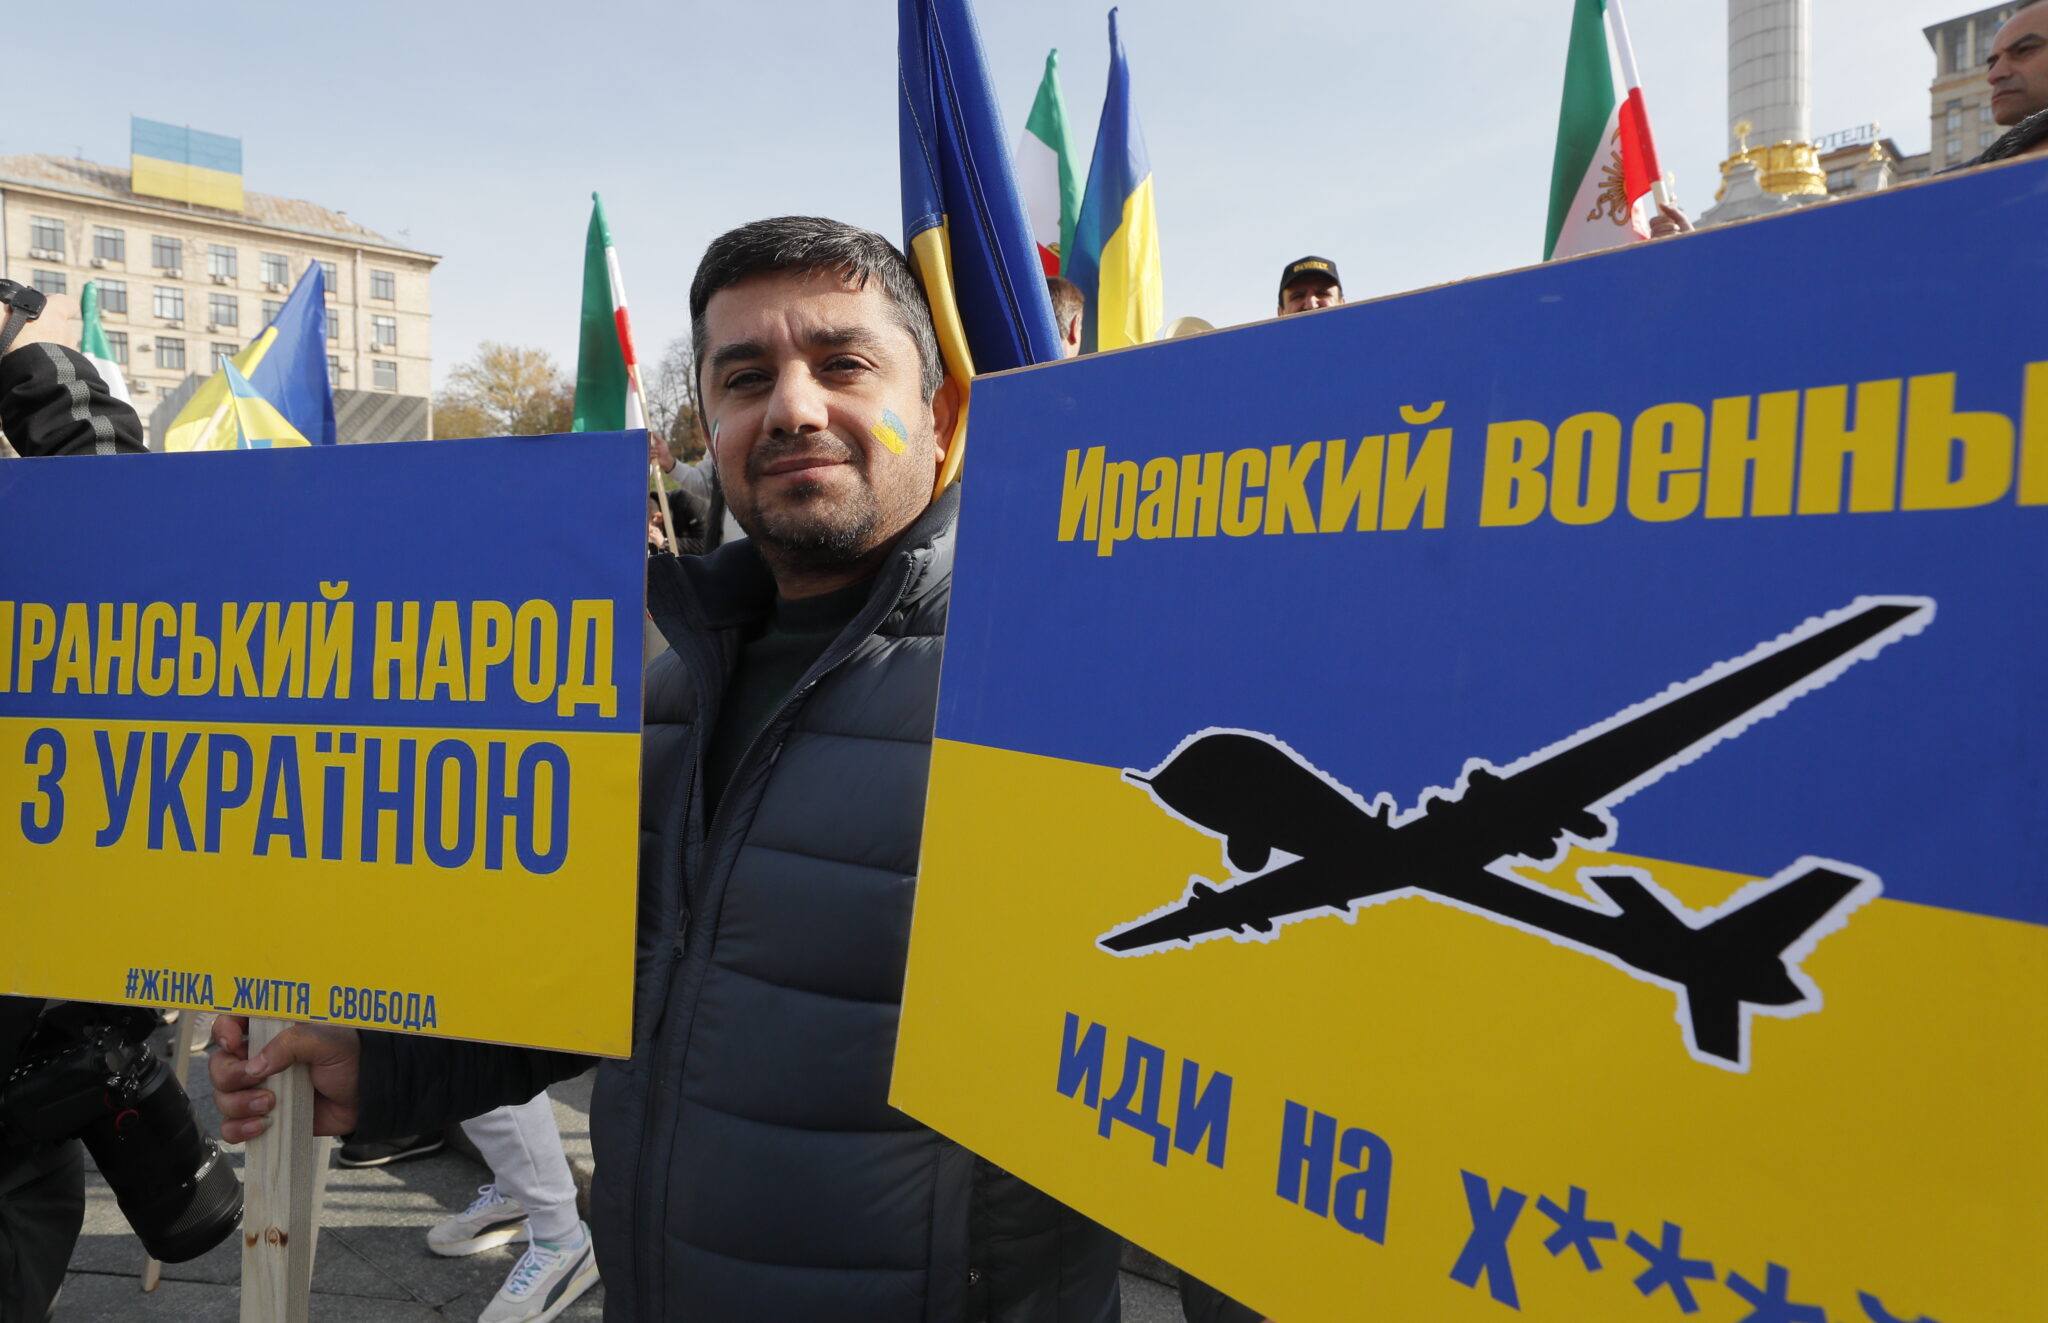 Представитель иранской диаспоры в Украине на митинге против поставок иранских дронов в Россию, 28 октября 2022 года. Фото EPA/SERGEY DOLZHENKO/Scanpix/Leta